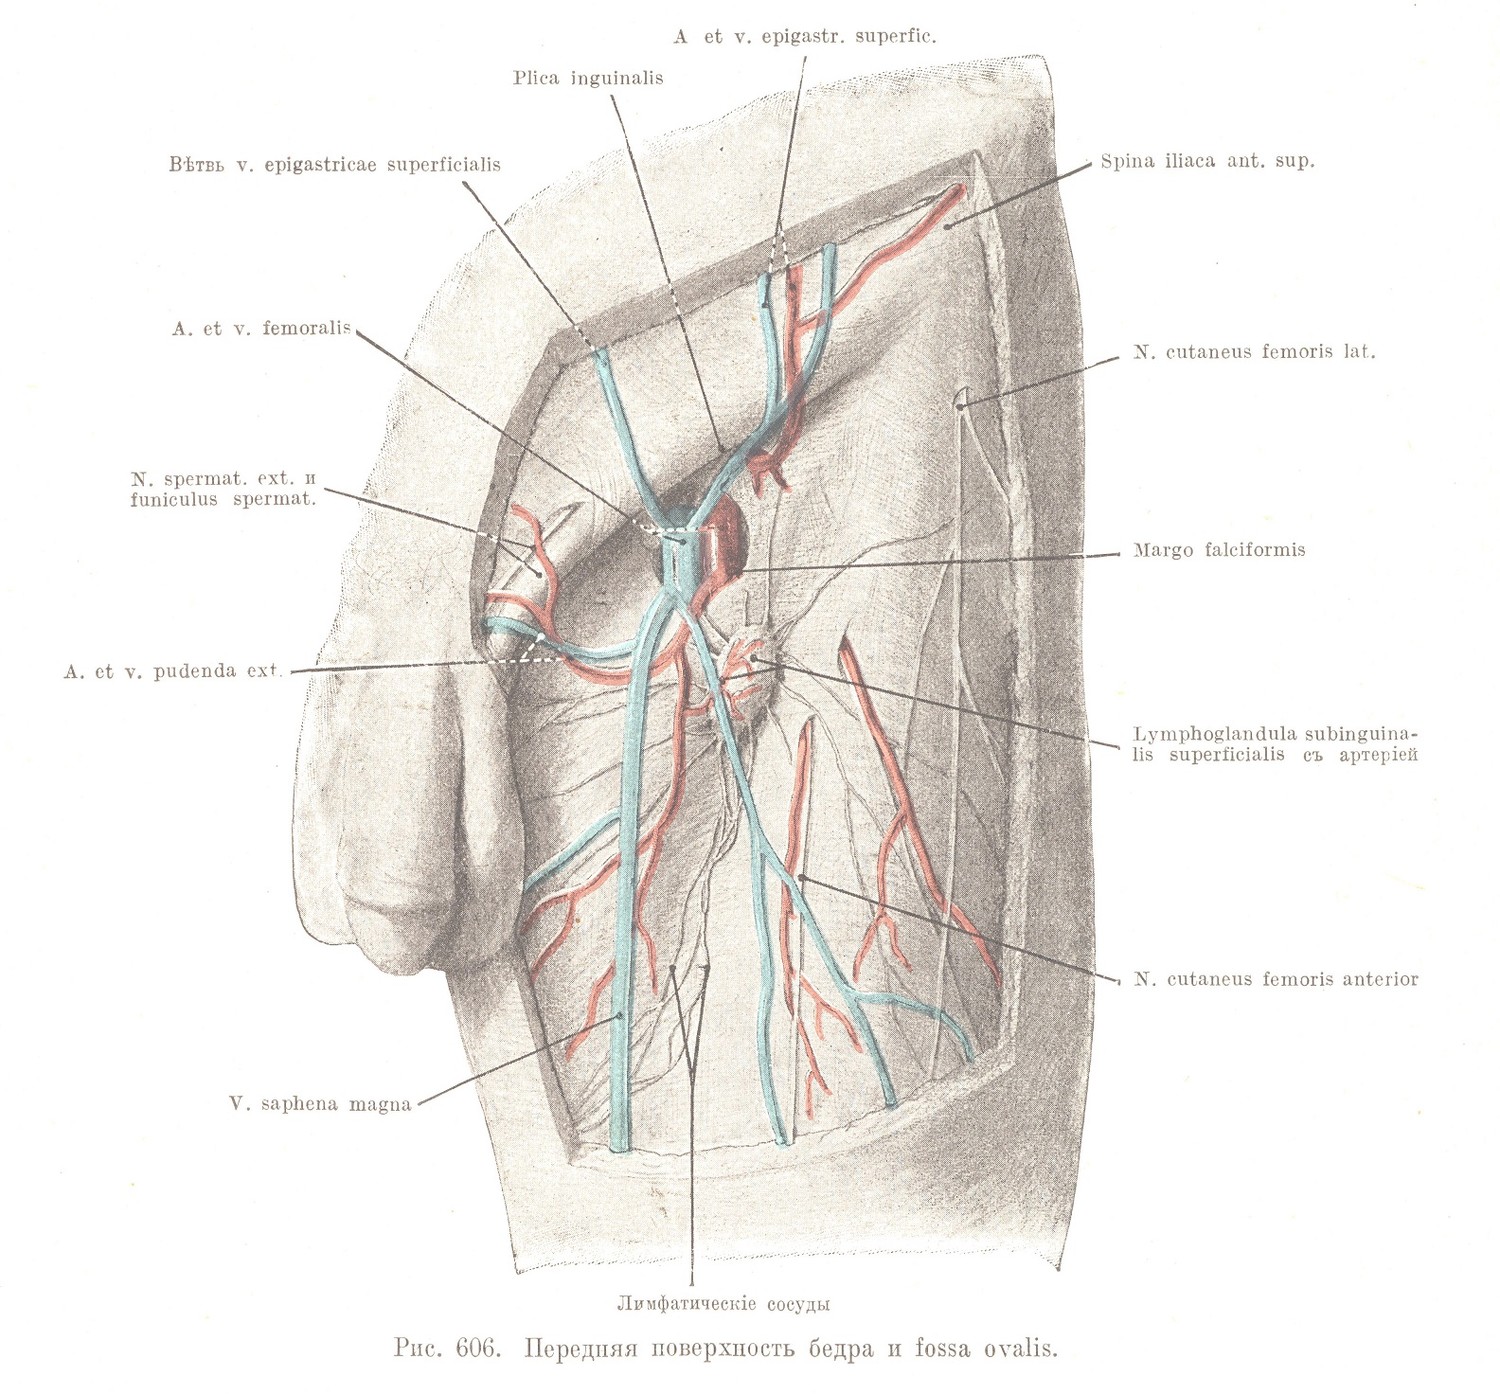 Regio femoris anterior